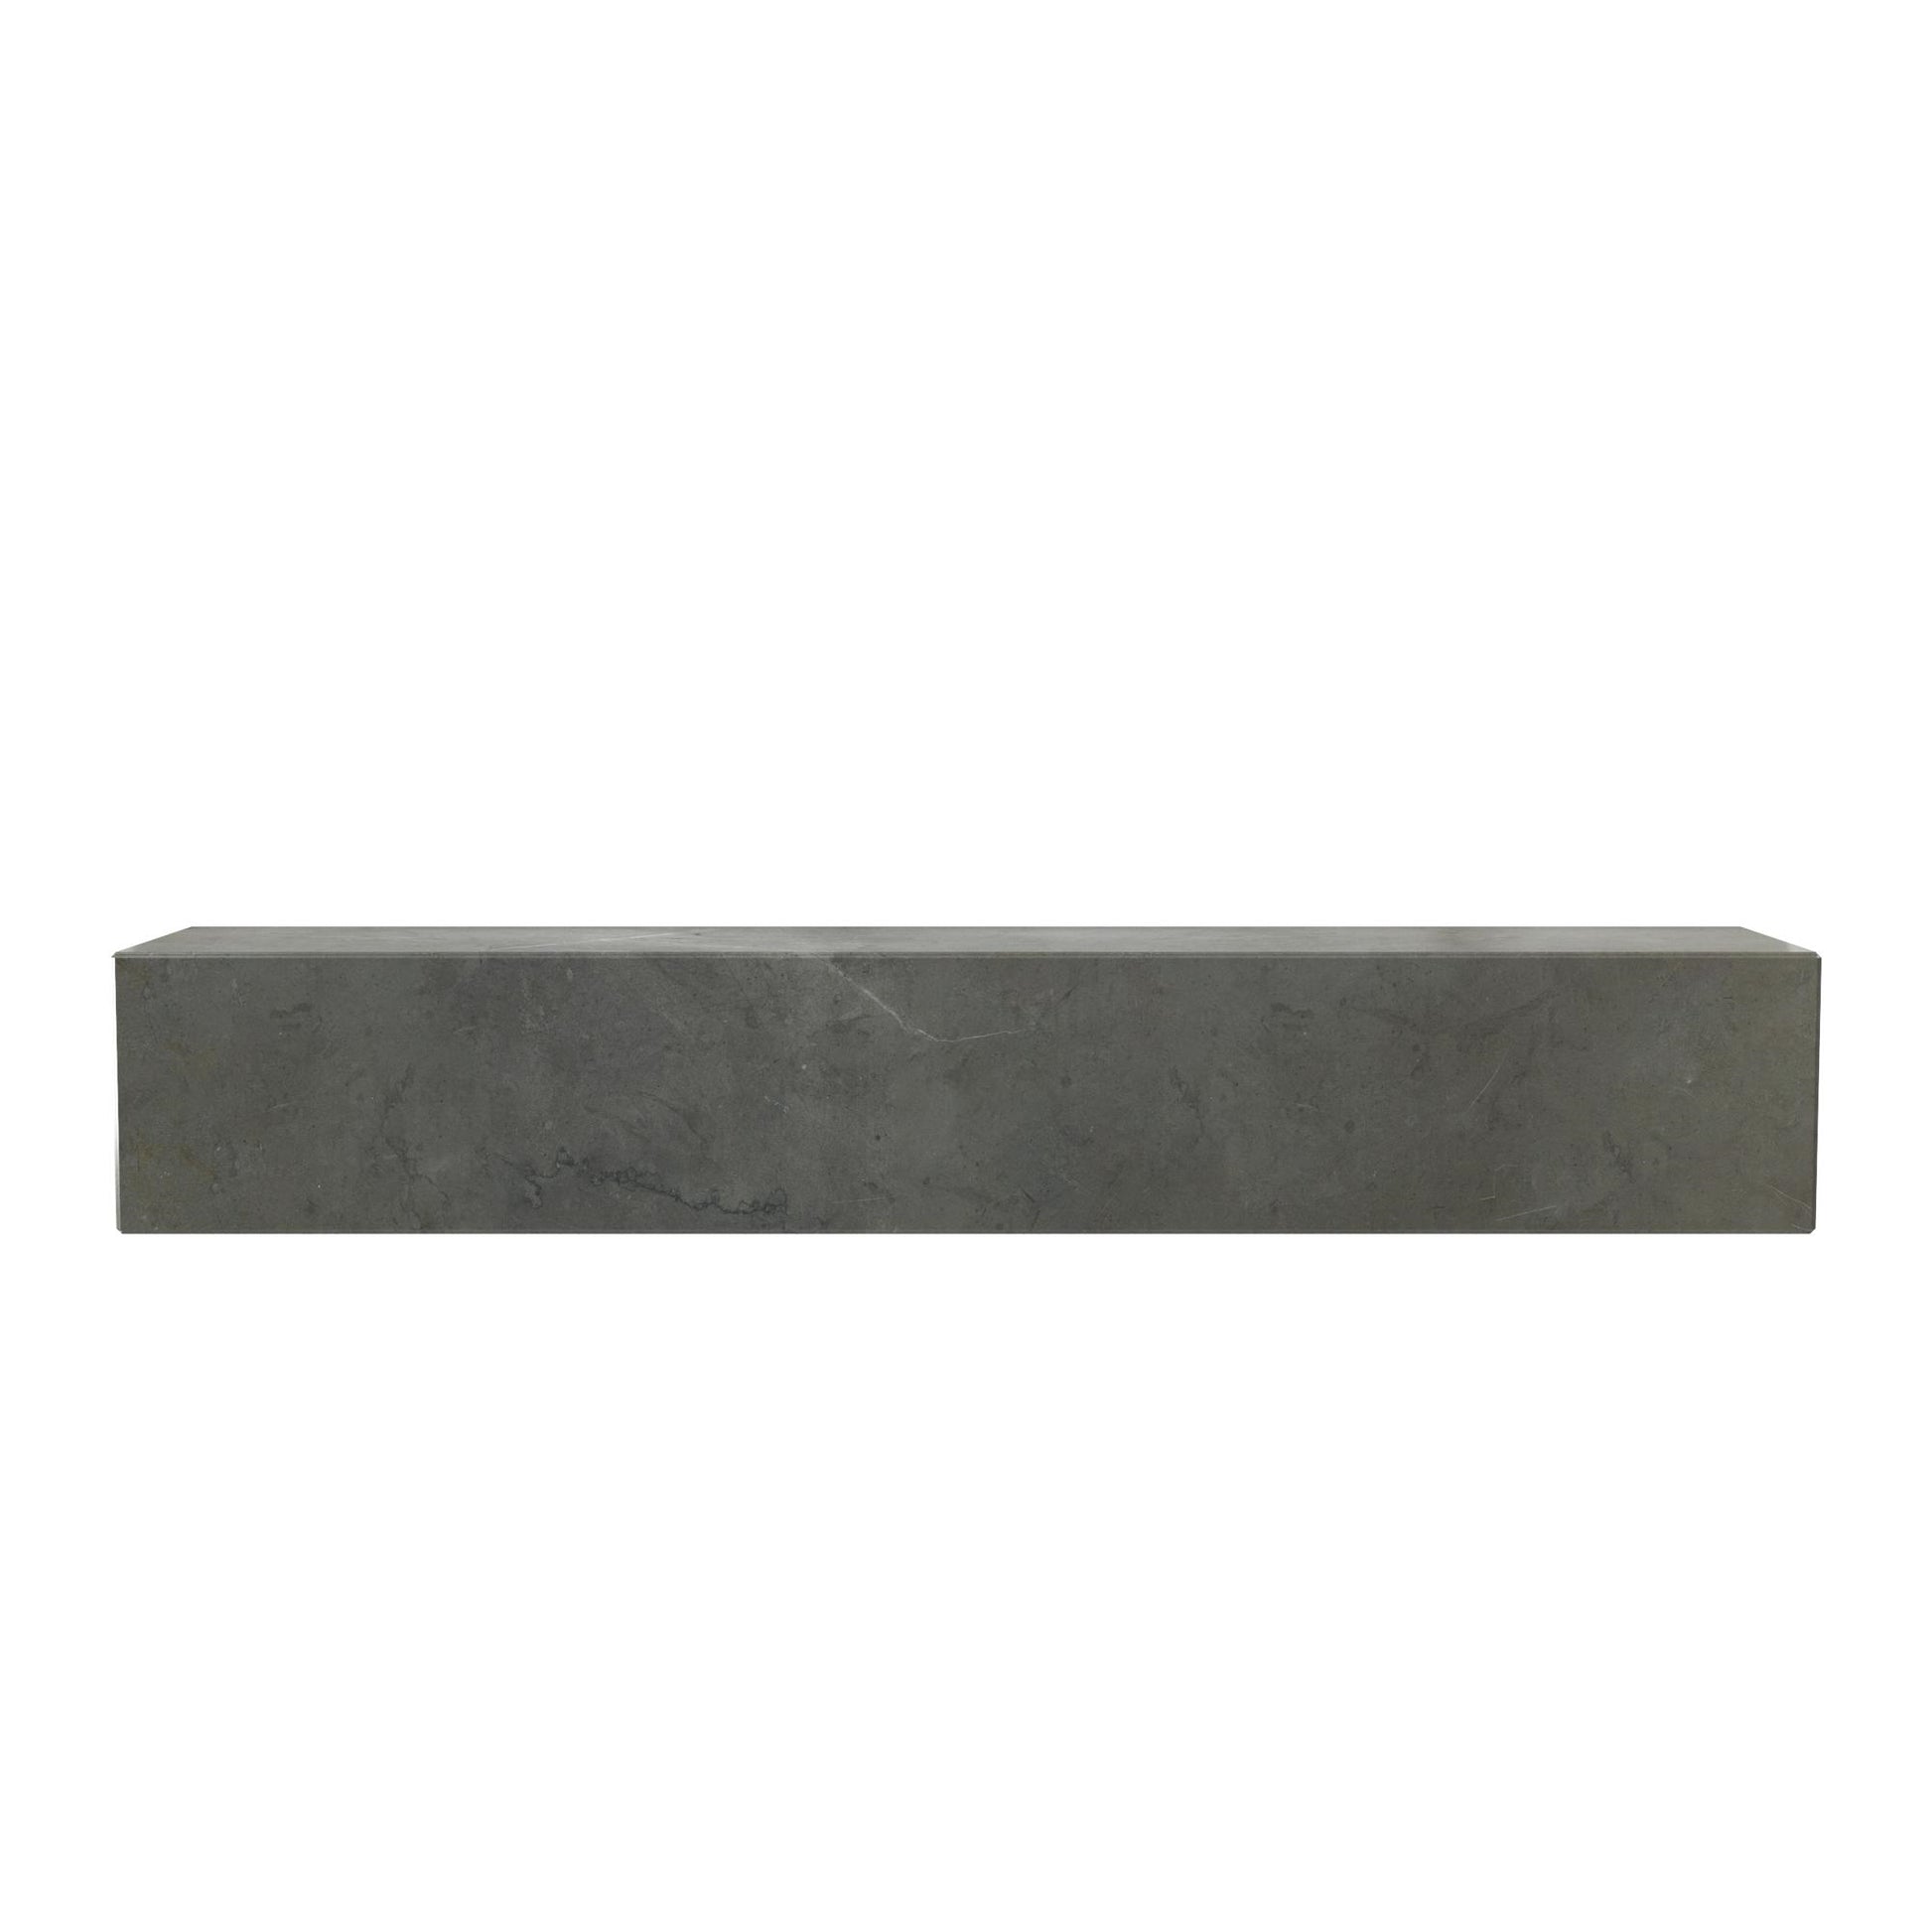 Plinth Shelf by Audo #Brown/ Gray Kendzo Marble